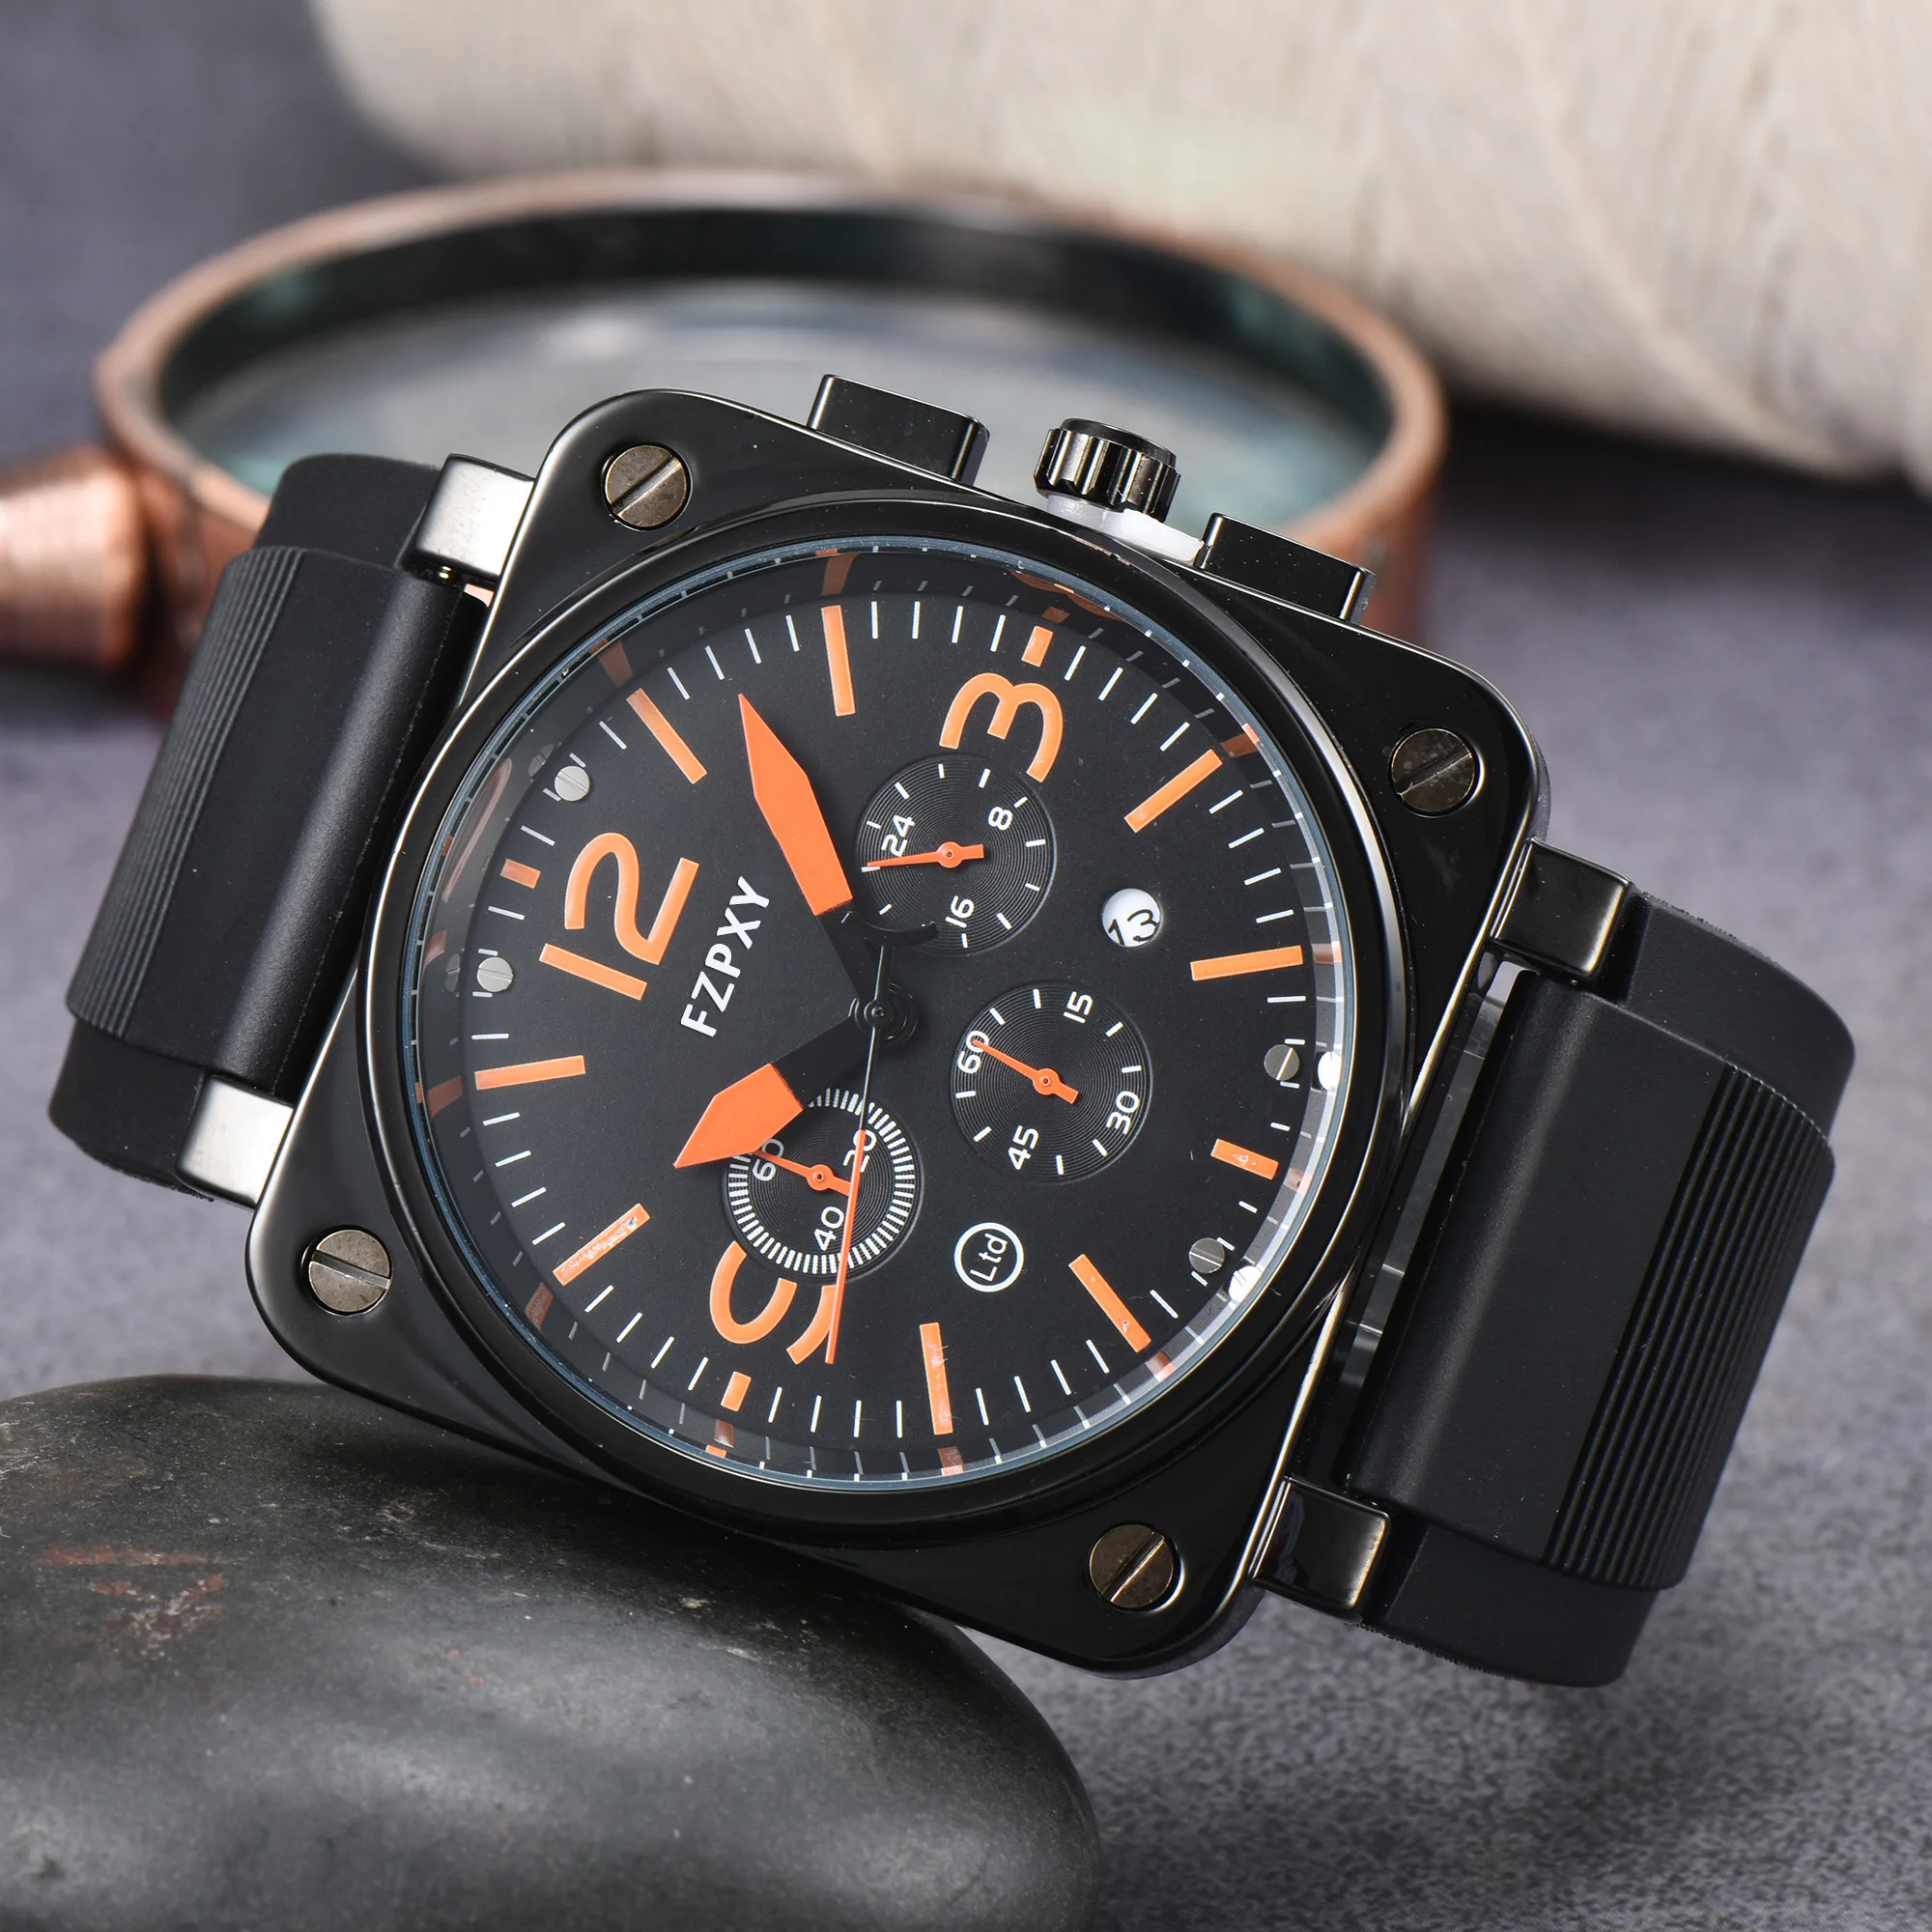 

Часы BR11 Мужские кварцевые в деловом стиле, роскошные многофункциональные спортивные наручные часы с колокольчиком из нержавеющей стали, квадратный циферблат Росса, модель BR